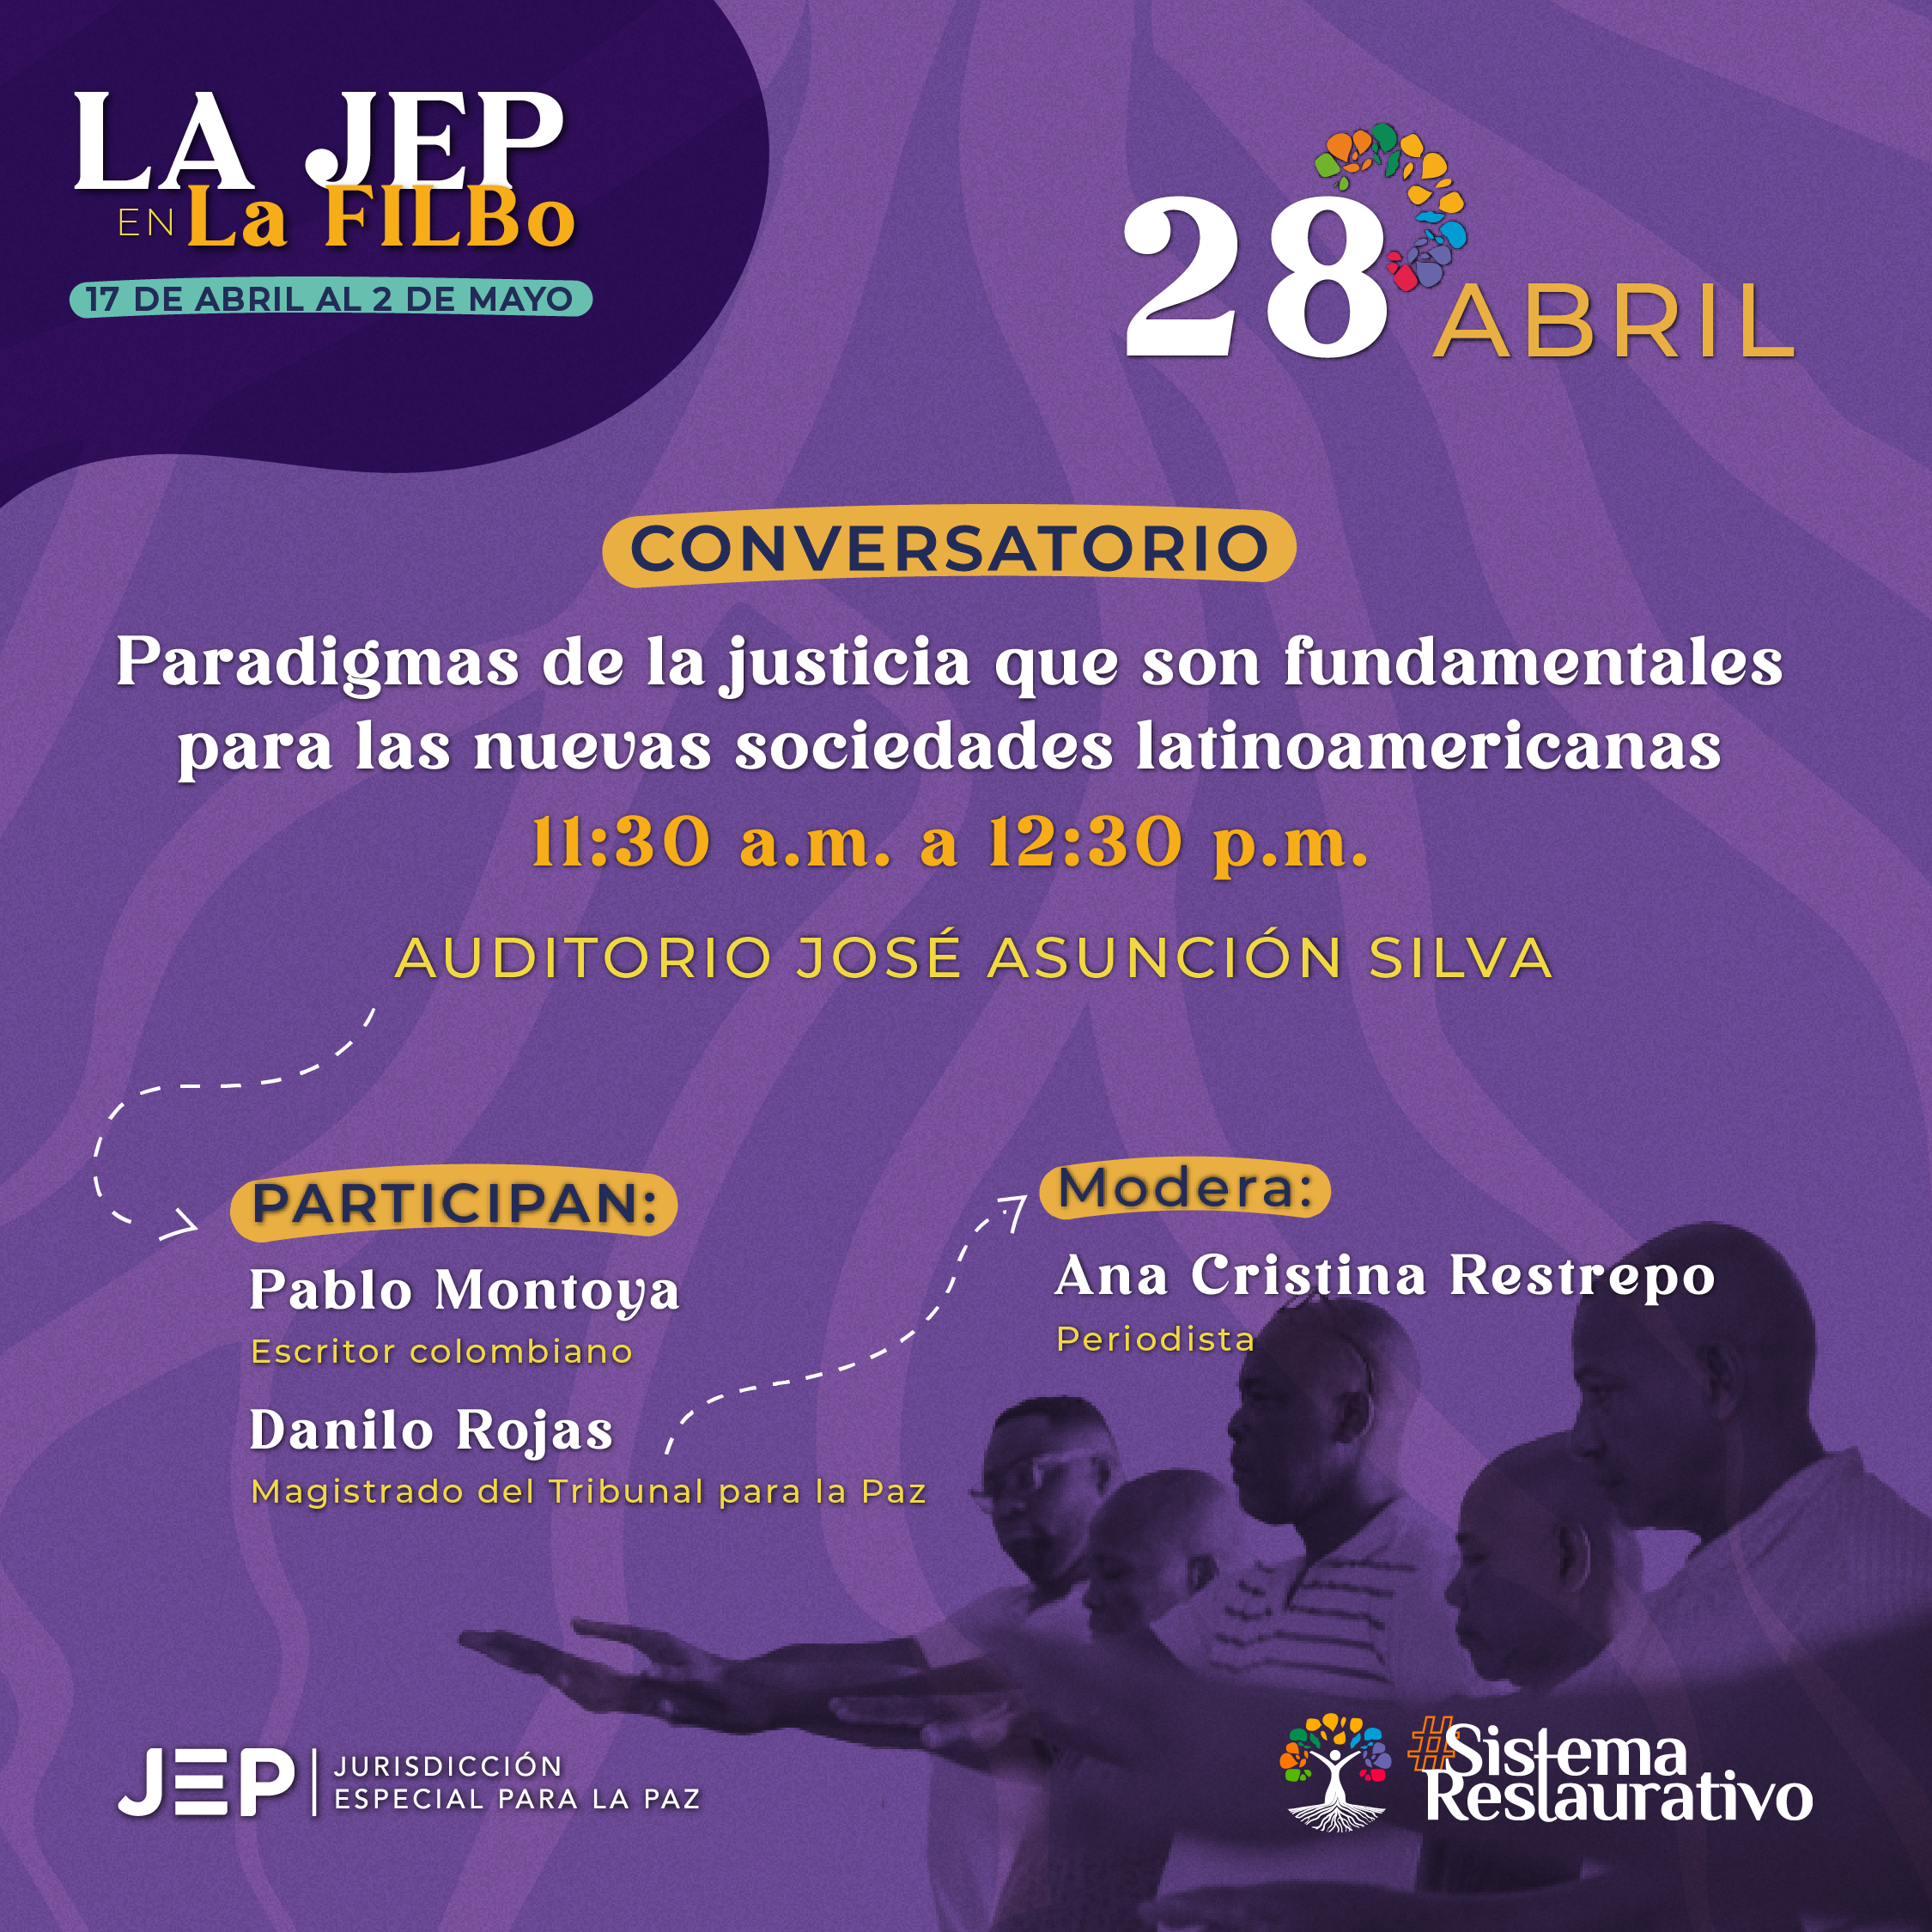 LA JEP en la FILBO, CONVERSATORIO Paradigmas de la justicia que son fundamentales para las nuevas sociedades latinoamericanas 11:30 a.m. a 12:30 p.m. AUDITORIO JOSÉ ASUNCIÓN SILVA